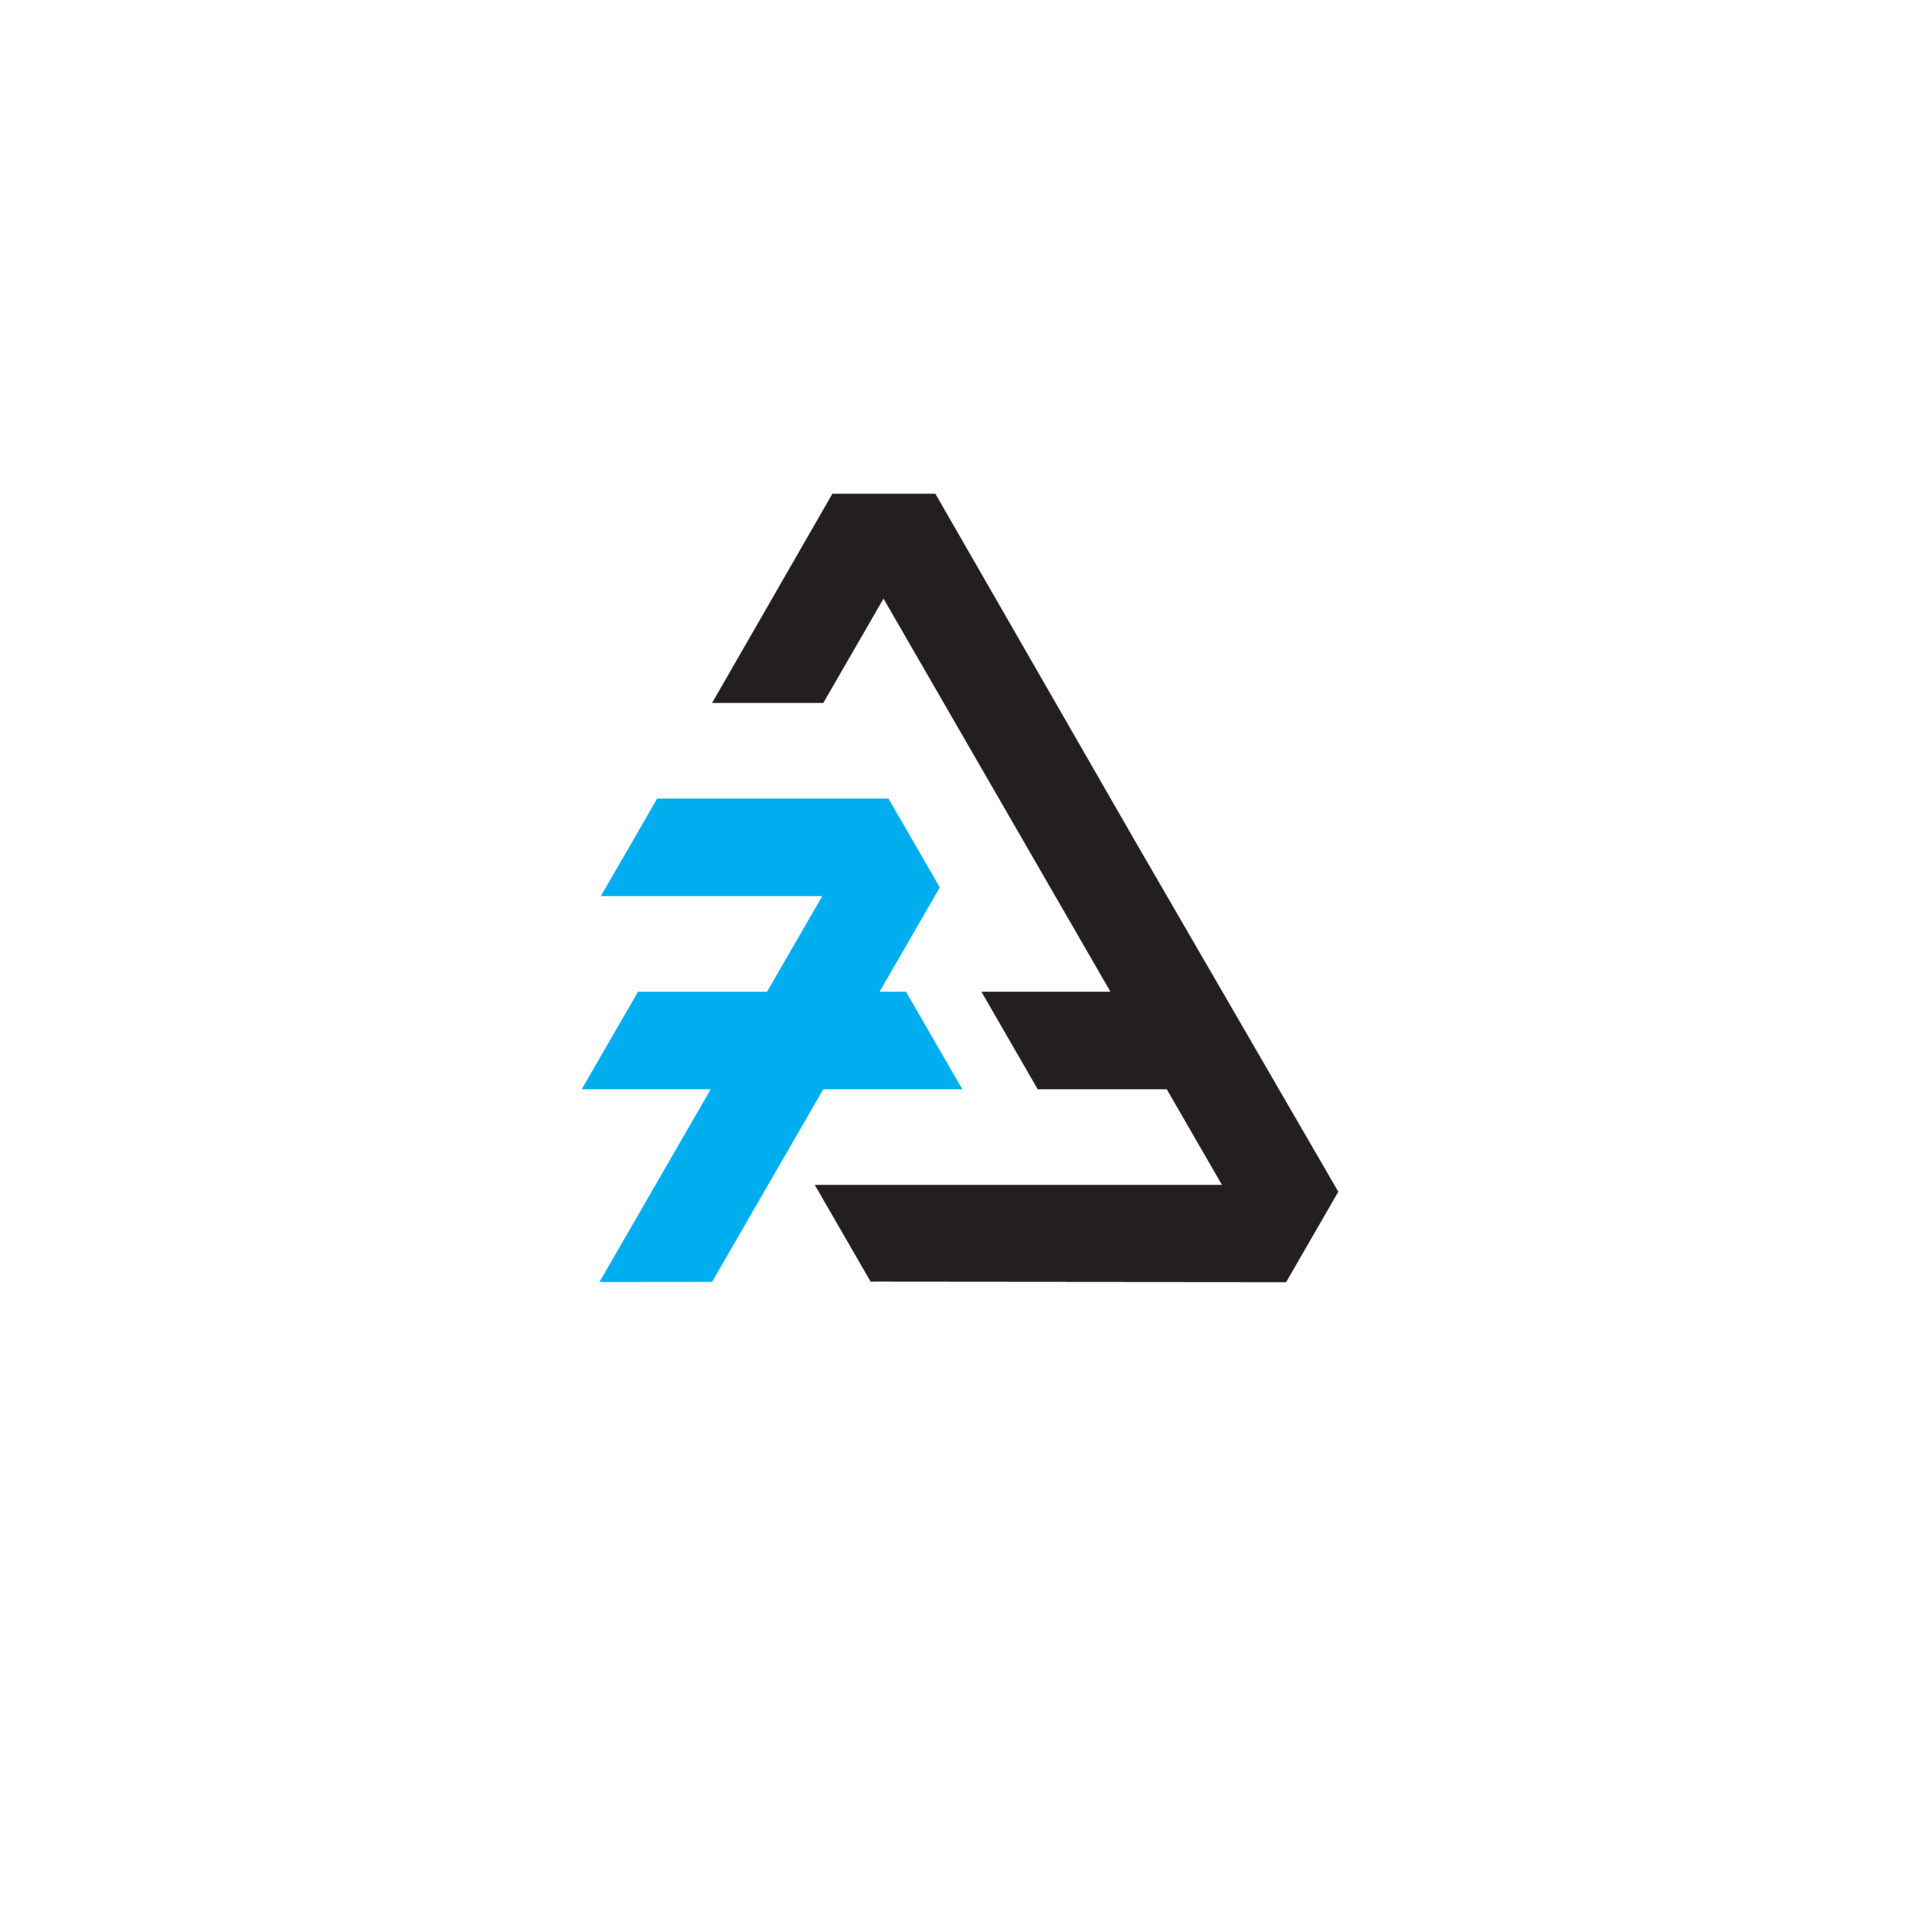 7A or a7 abstract monogram logo design vector templates in ...